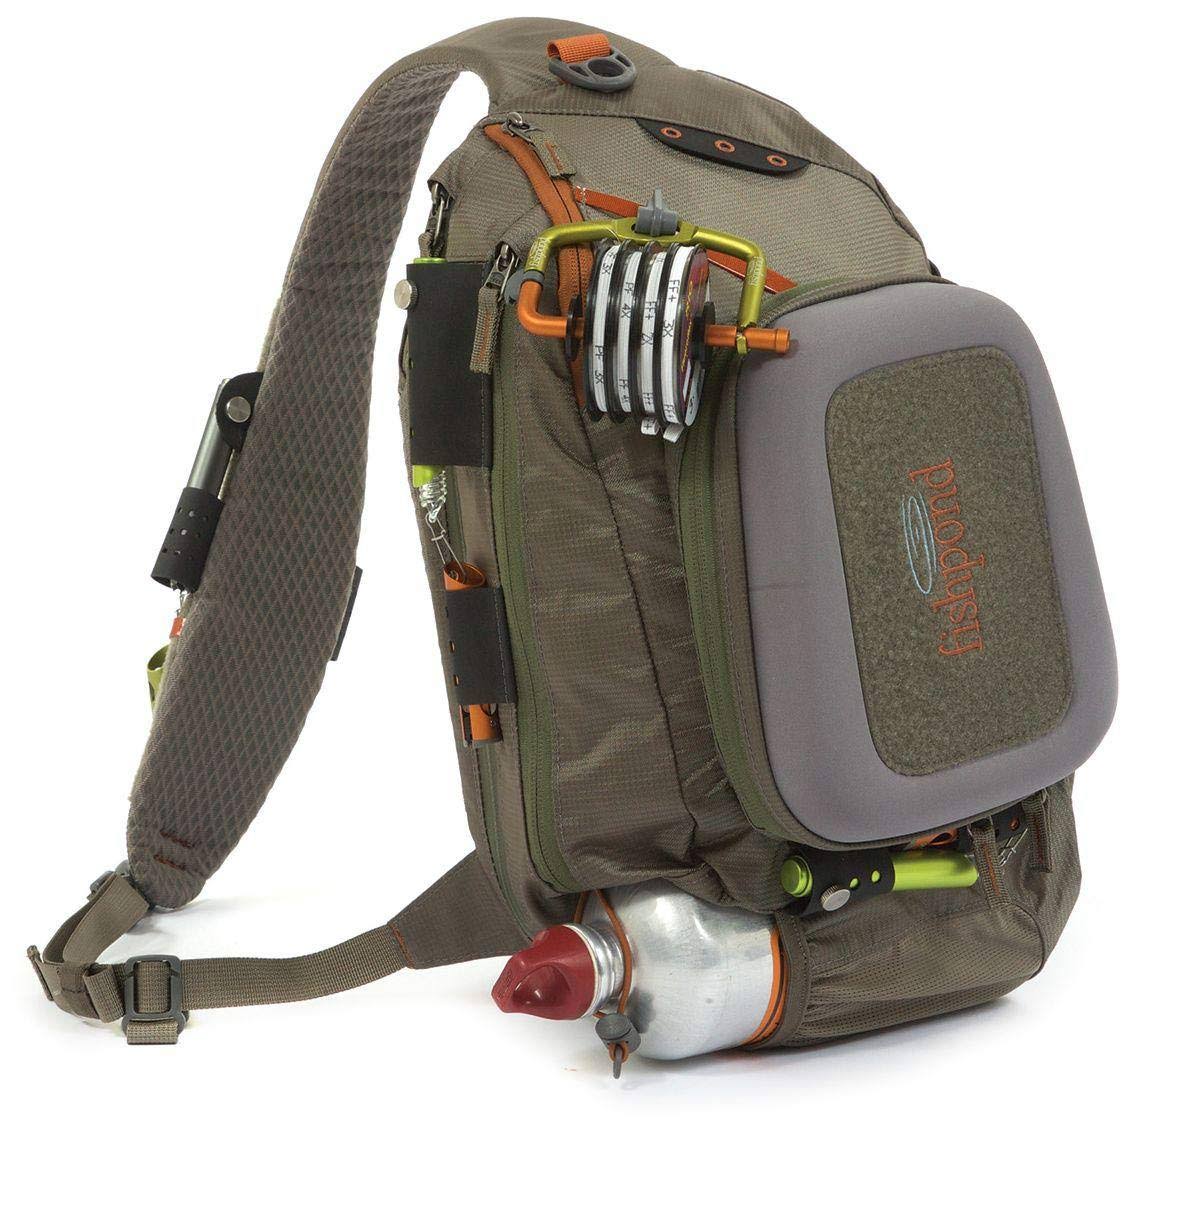 Fishpond Summit Sling Fly Fishing Pack Hands Gear Shoulder Bag